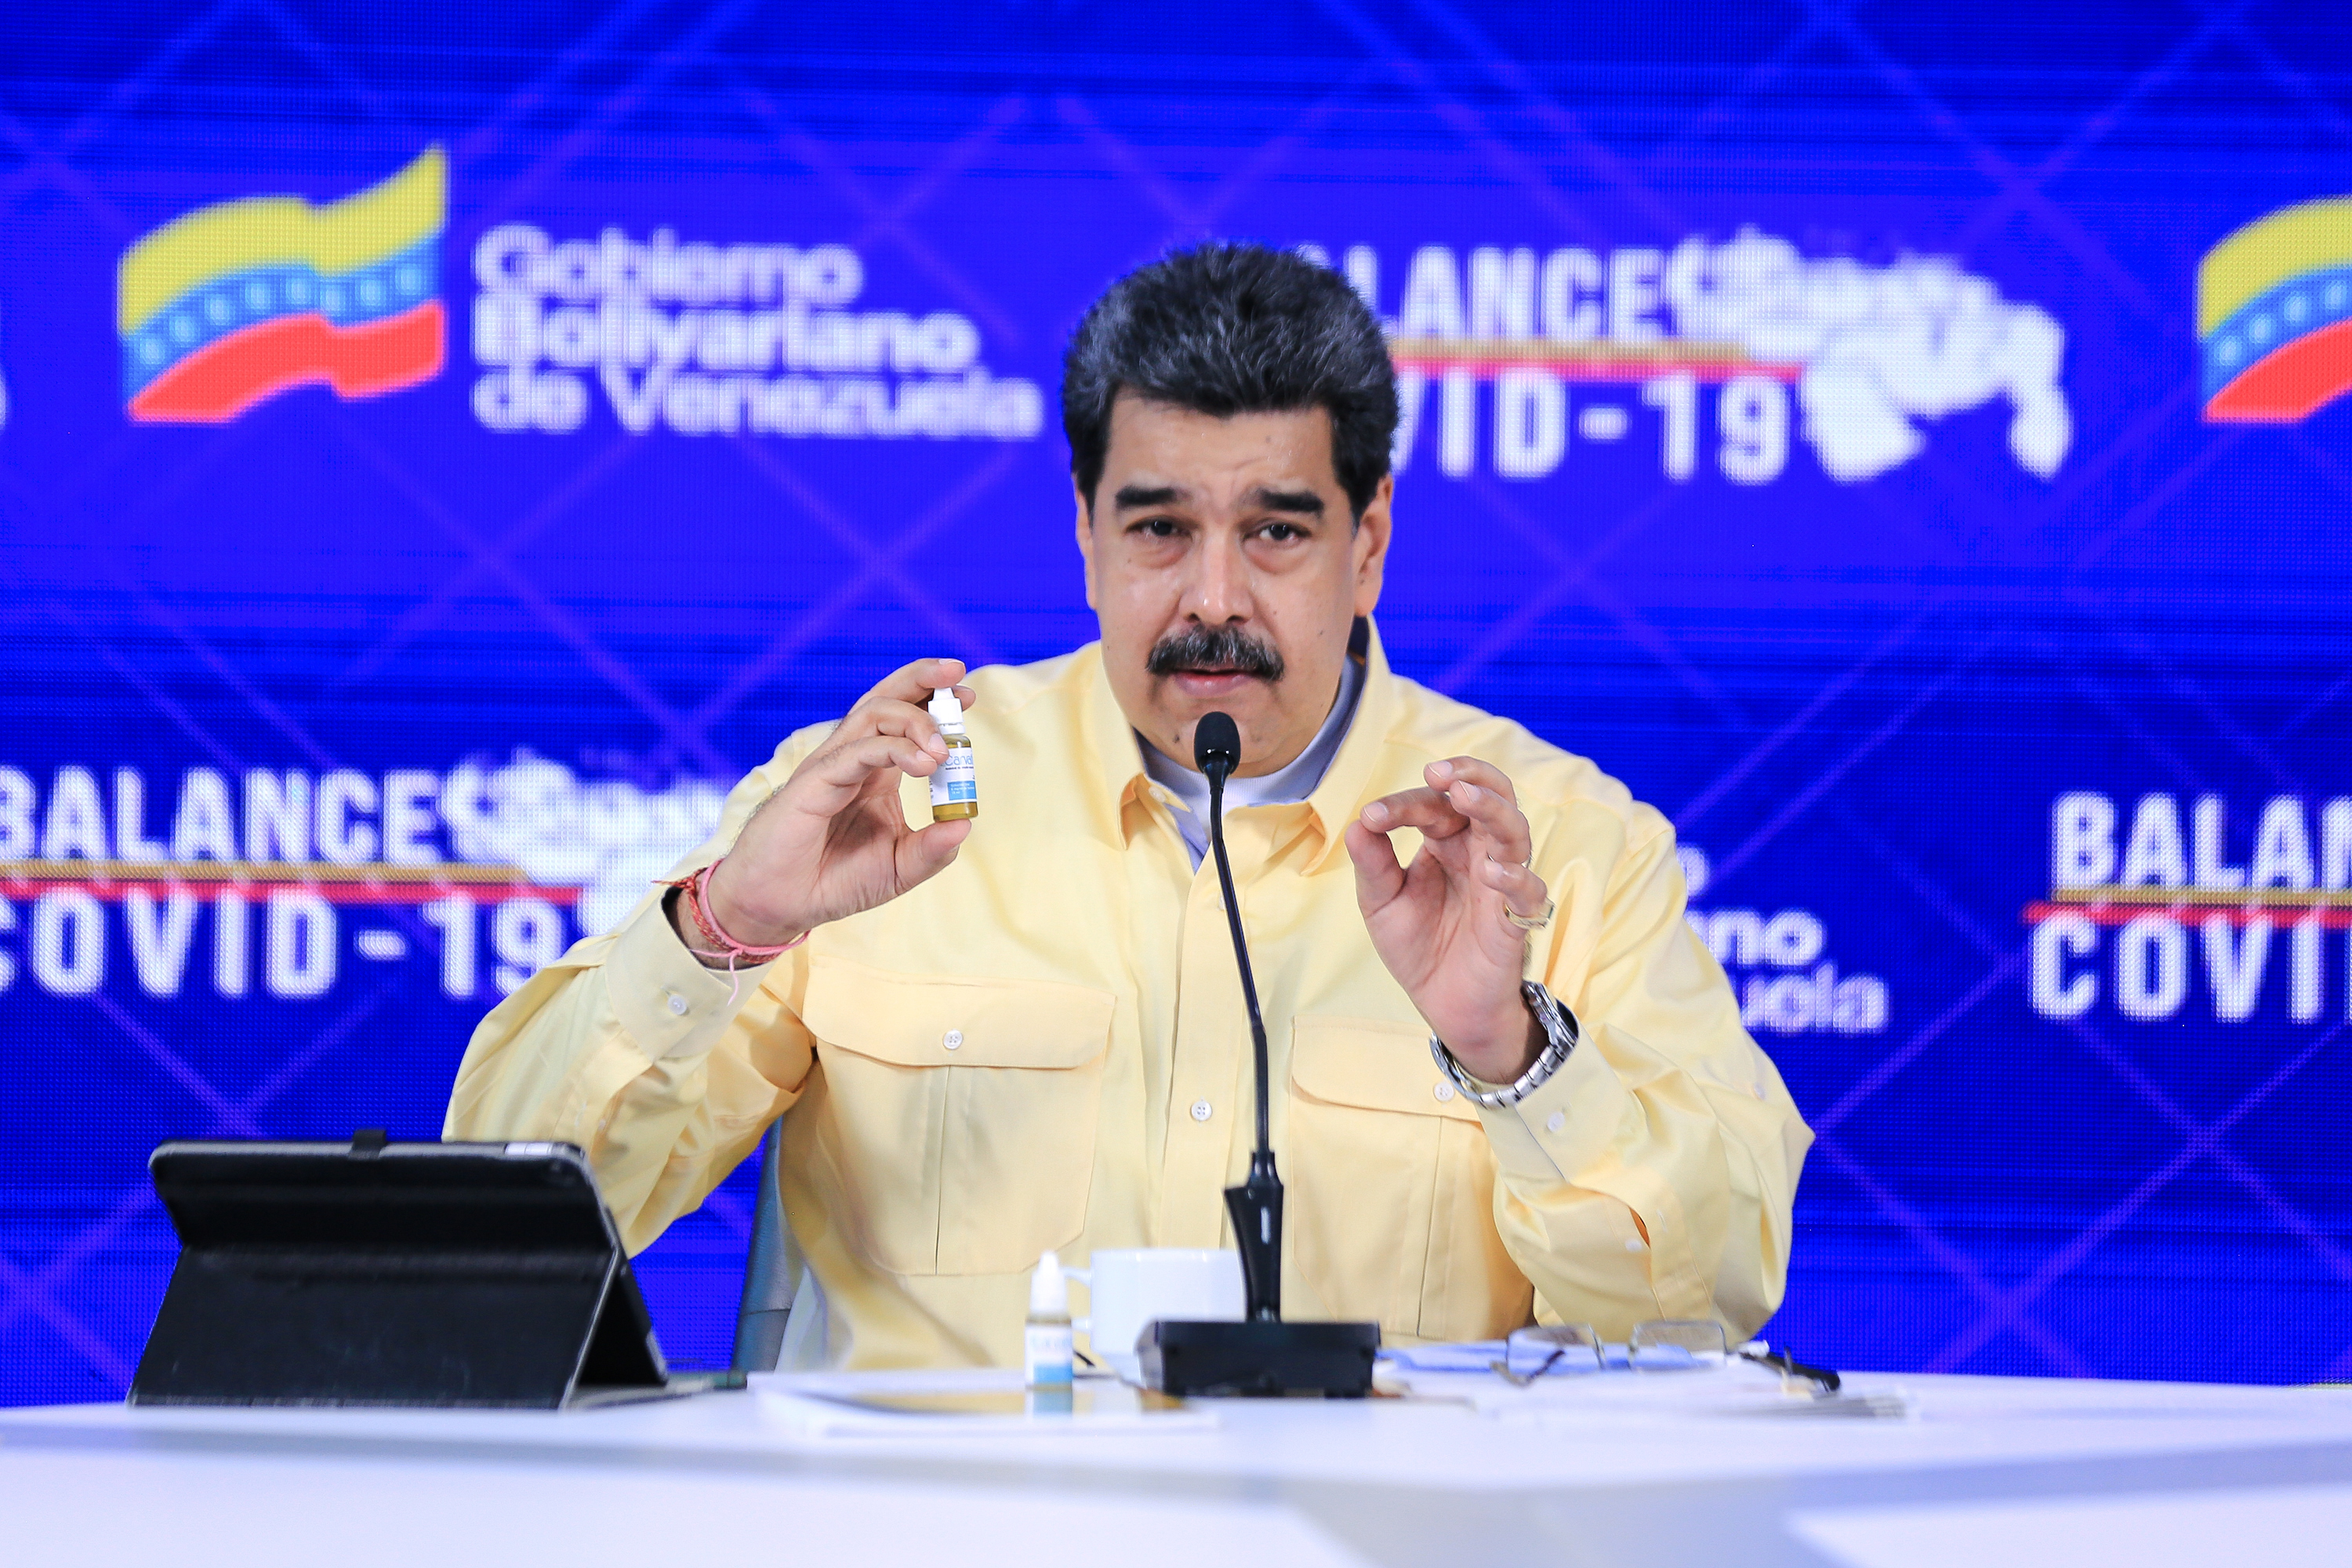 La Academia Nacional de Medicina sobre las “goticas milagrosas” de Maduro: Solo sirven como enjuague bucal